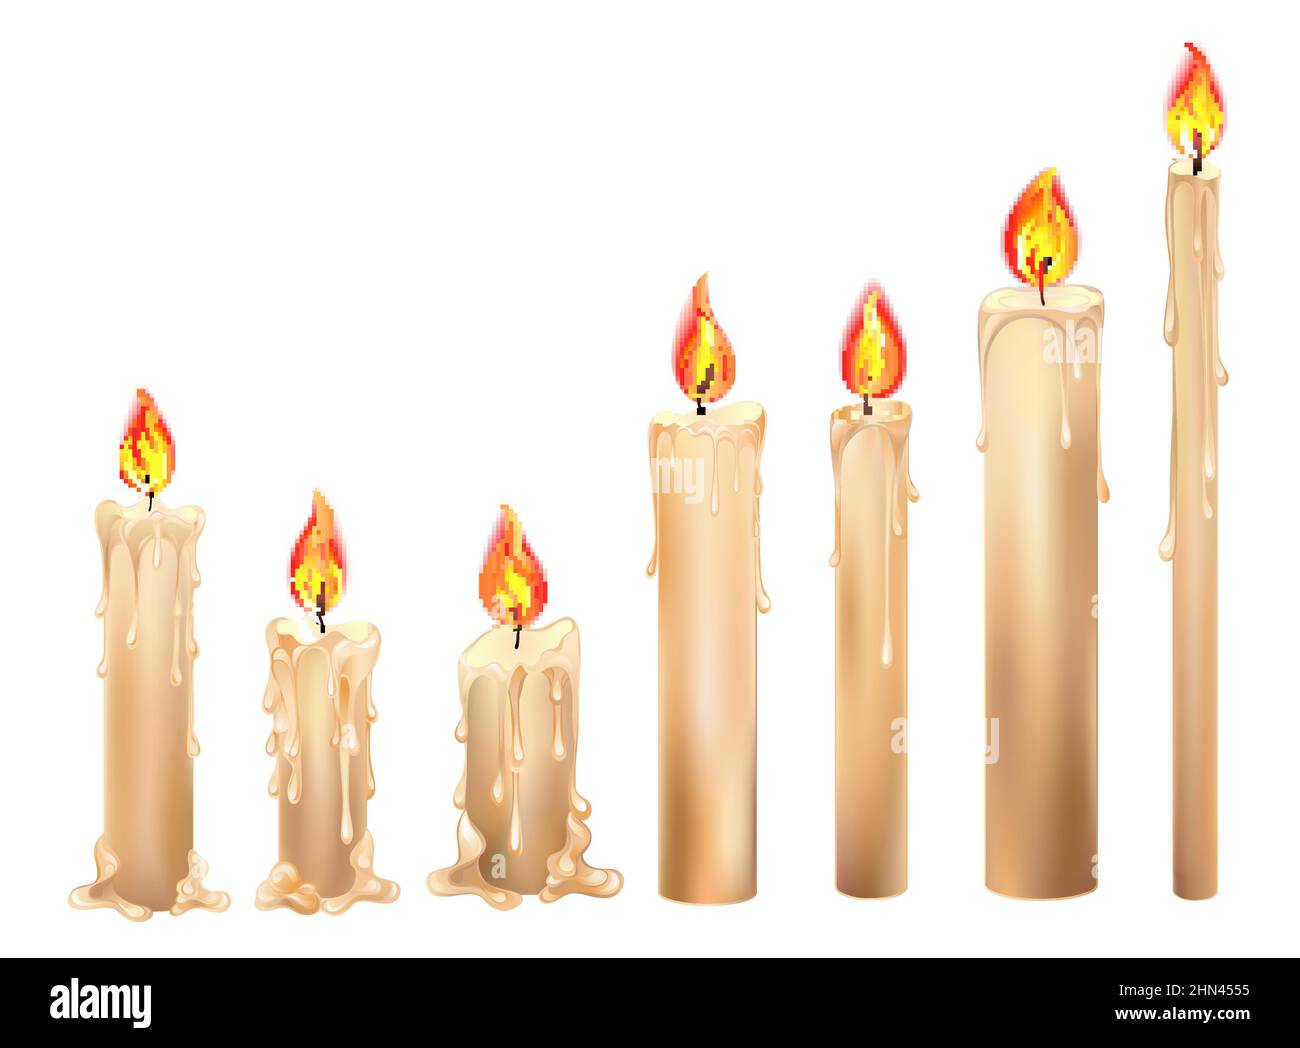 Ensemble de bougies isolées, artistiquement dessinées, brûlantes avec feu rouge sur fond blanc. Illustration de Vecteur